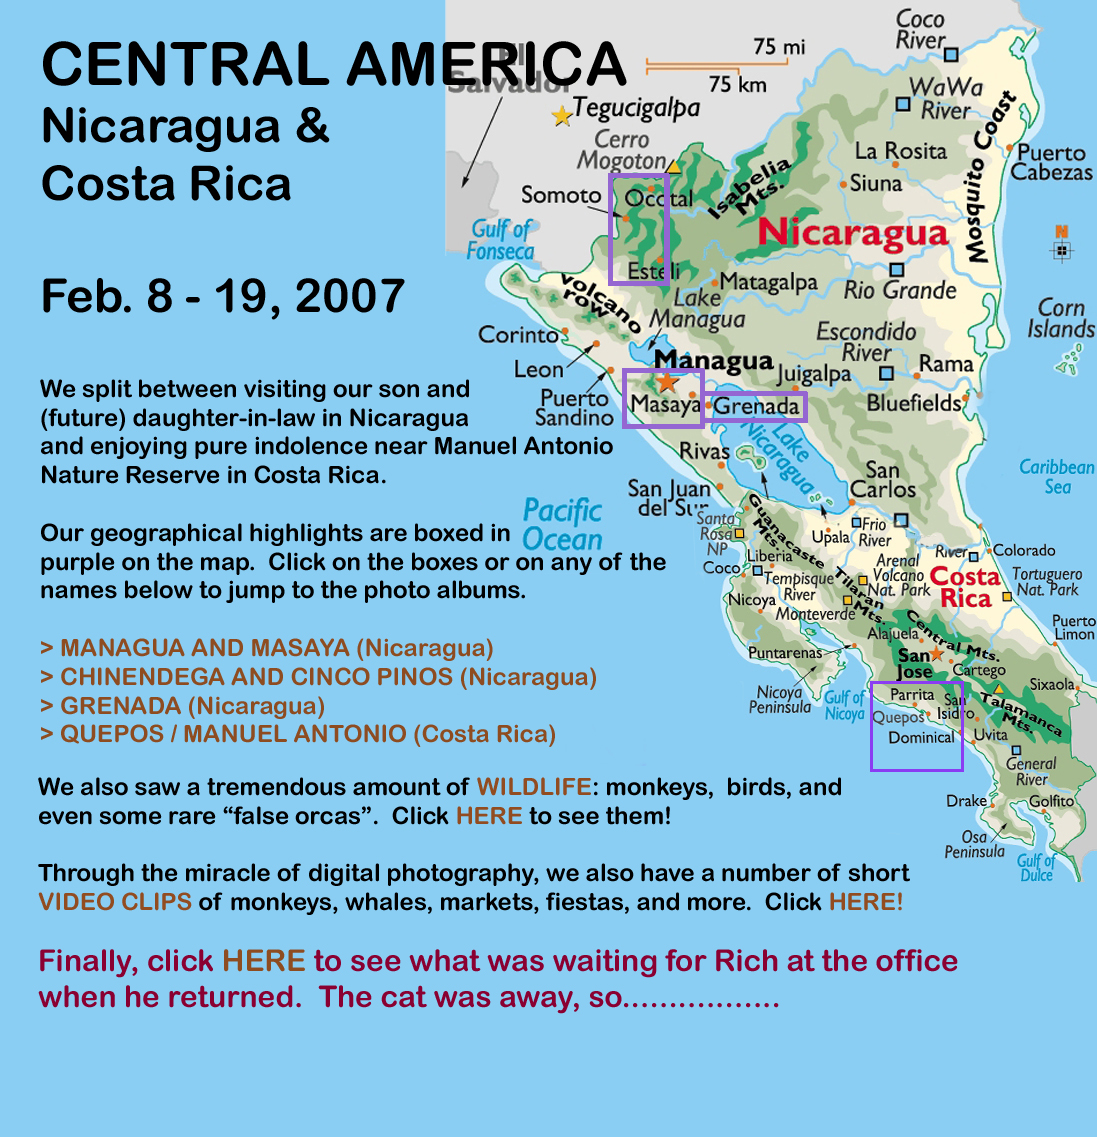 Central America 2007